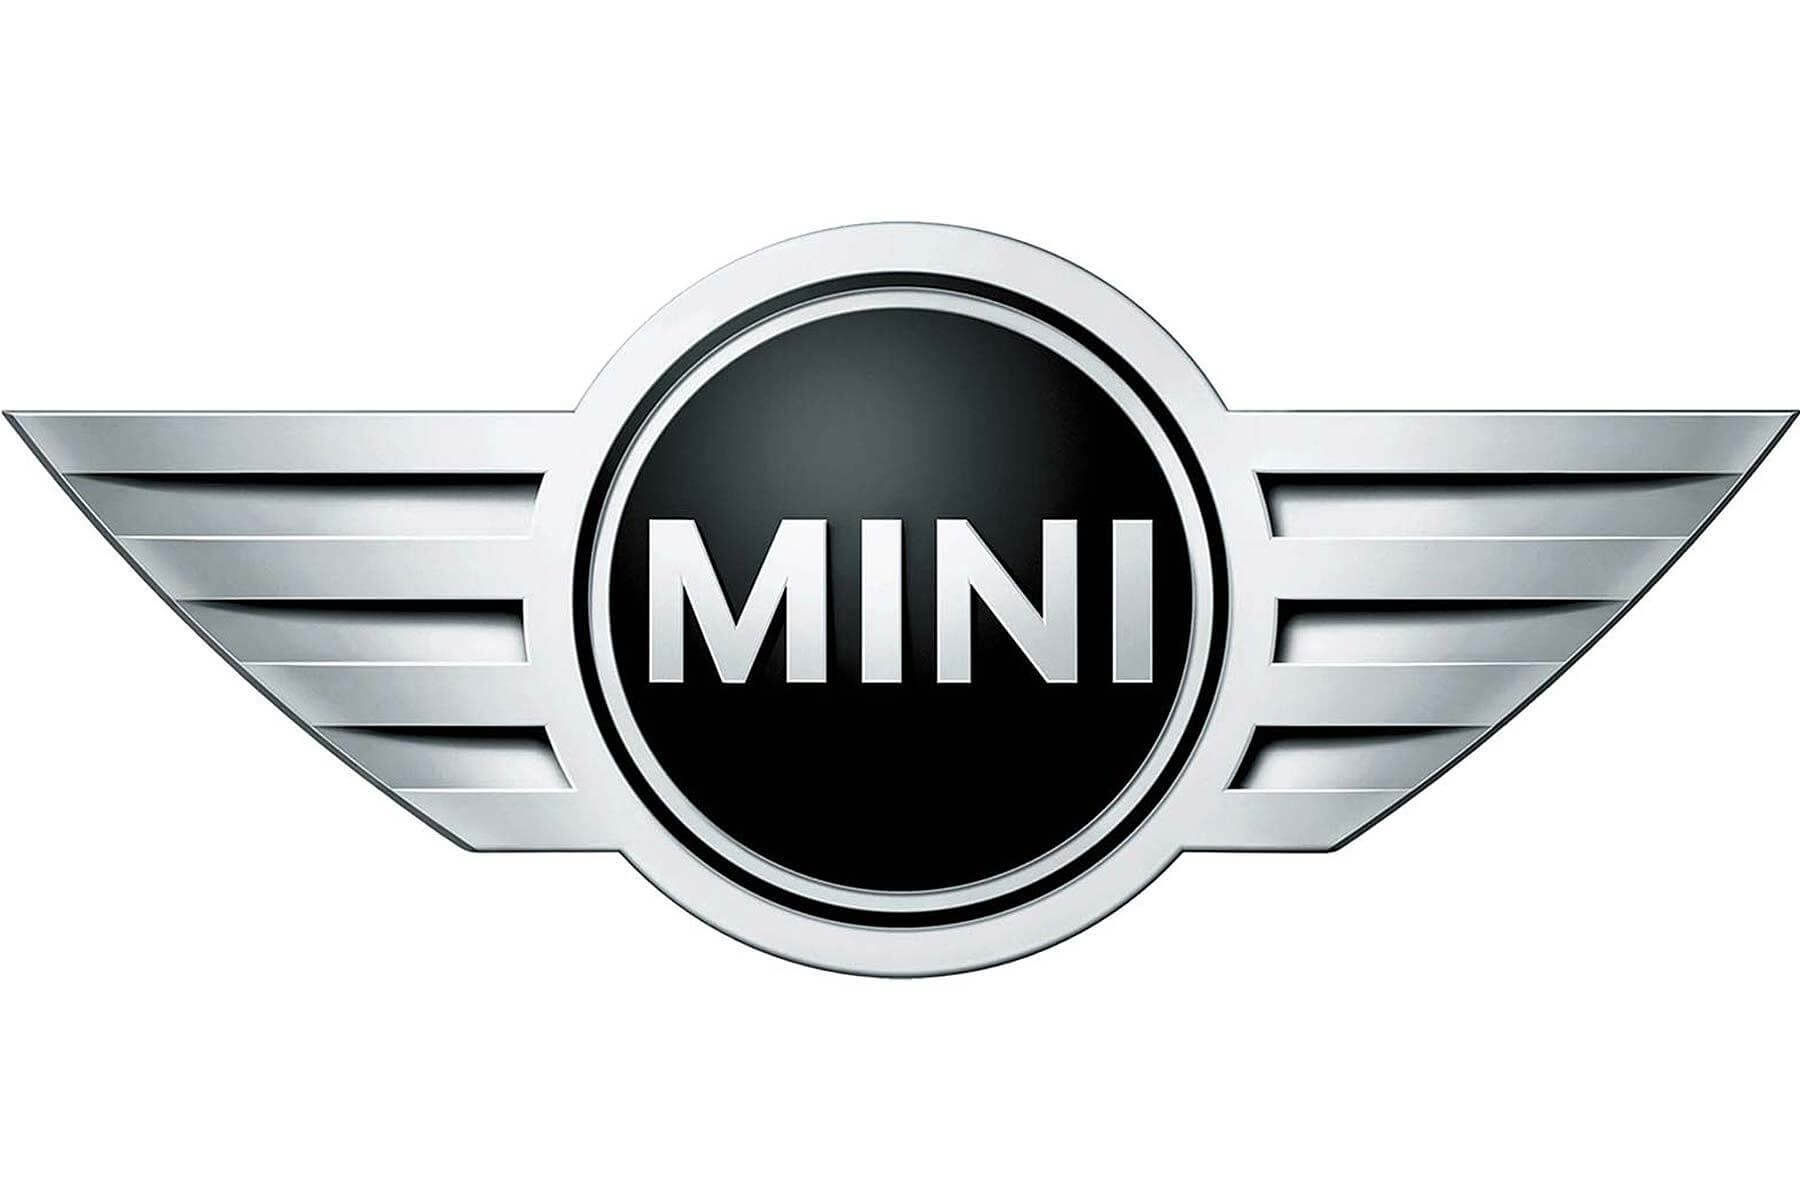 Mini china auto parts supplier (Copy) (Copy)